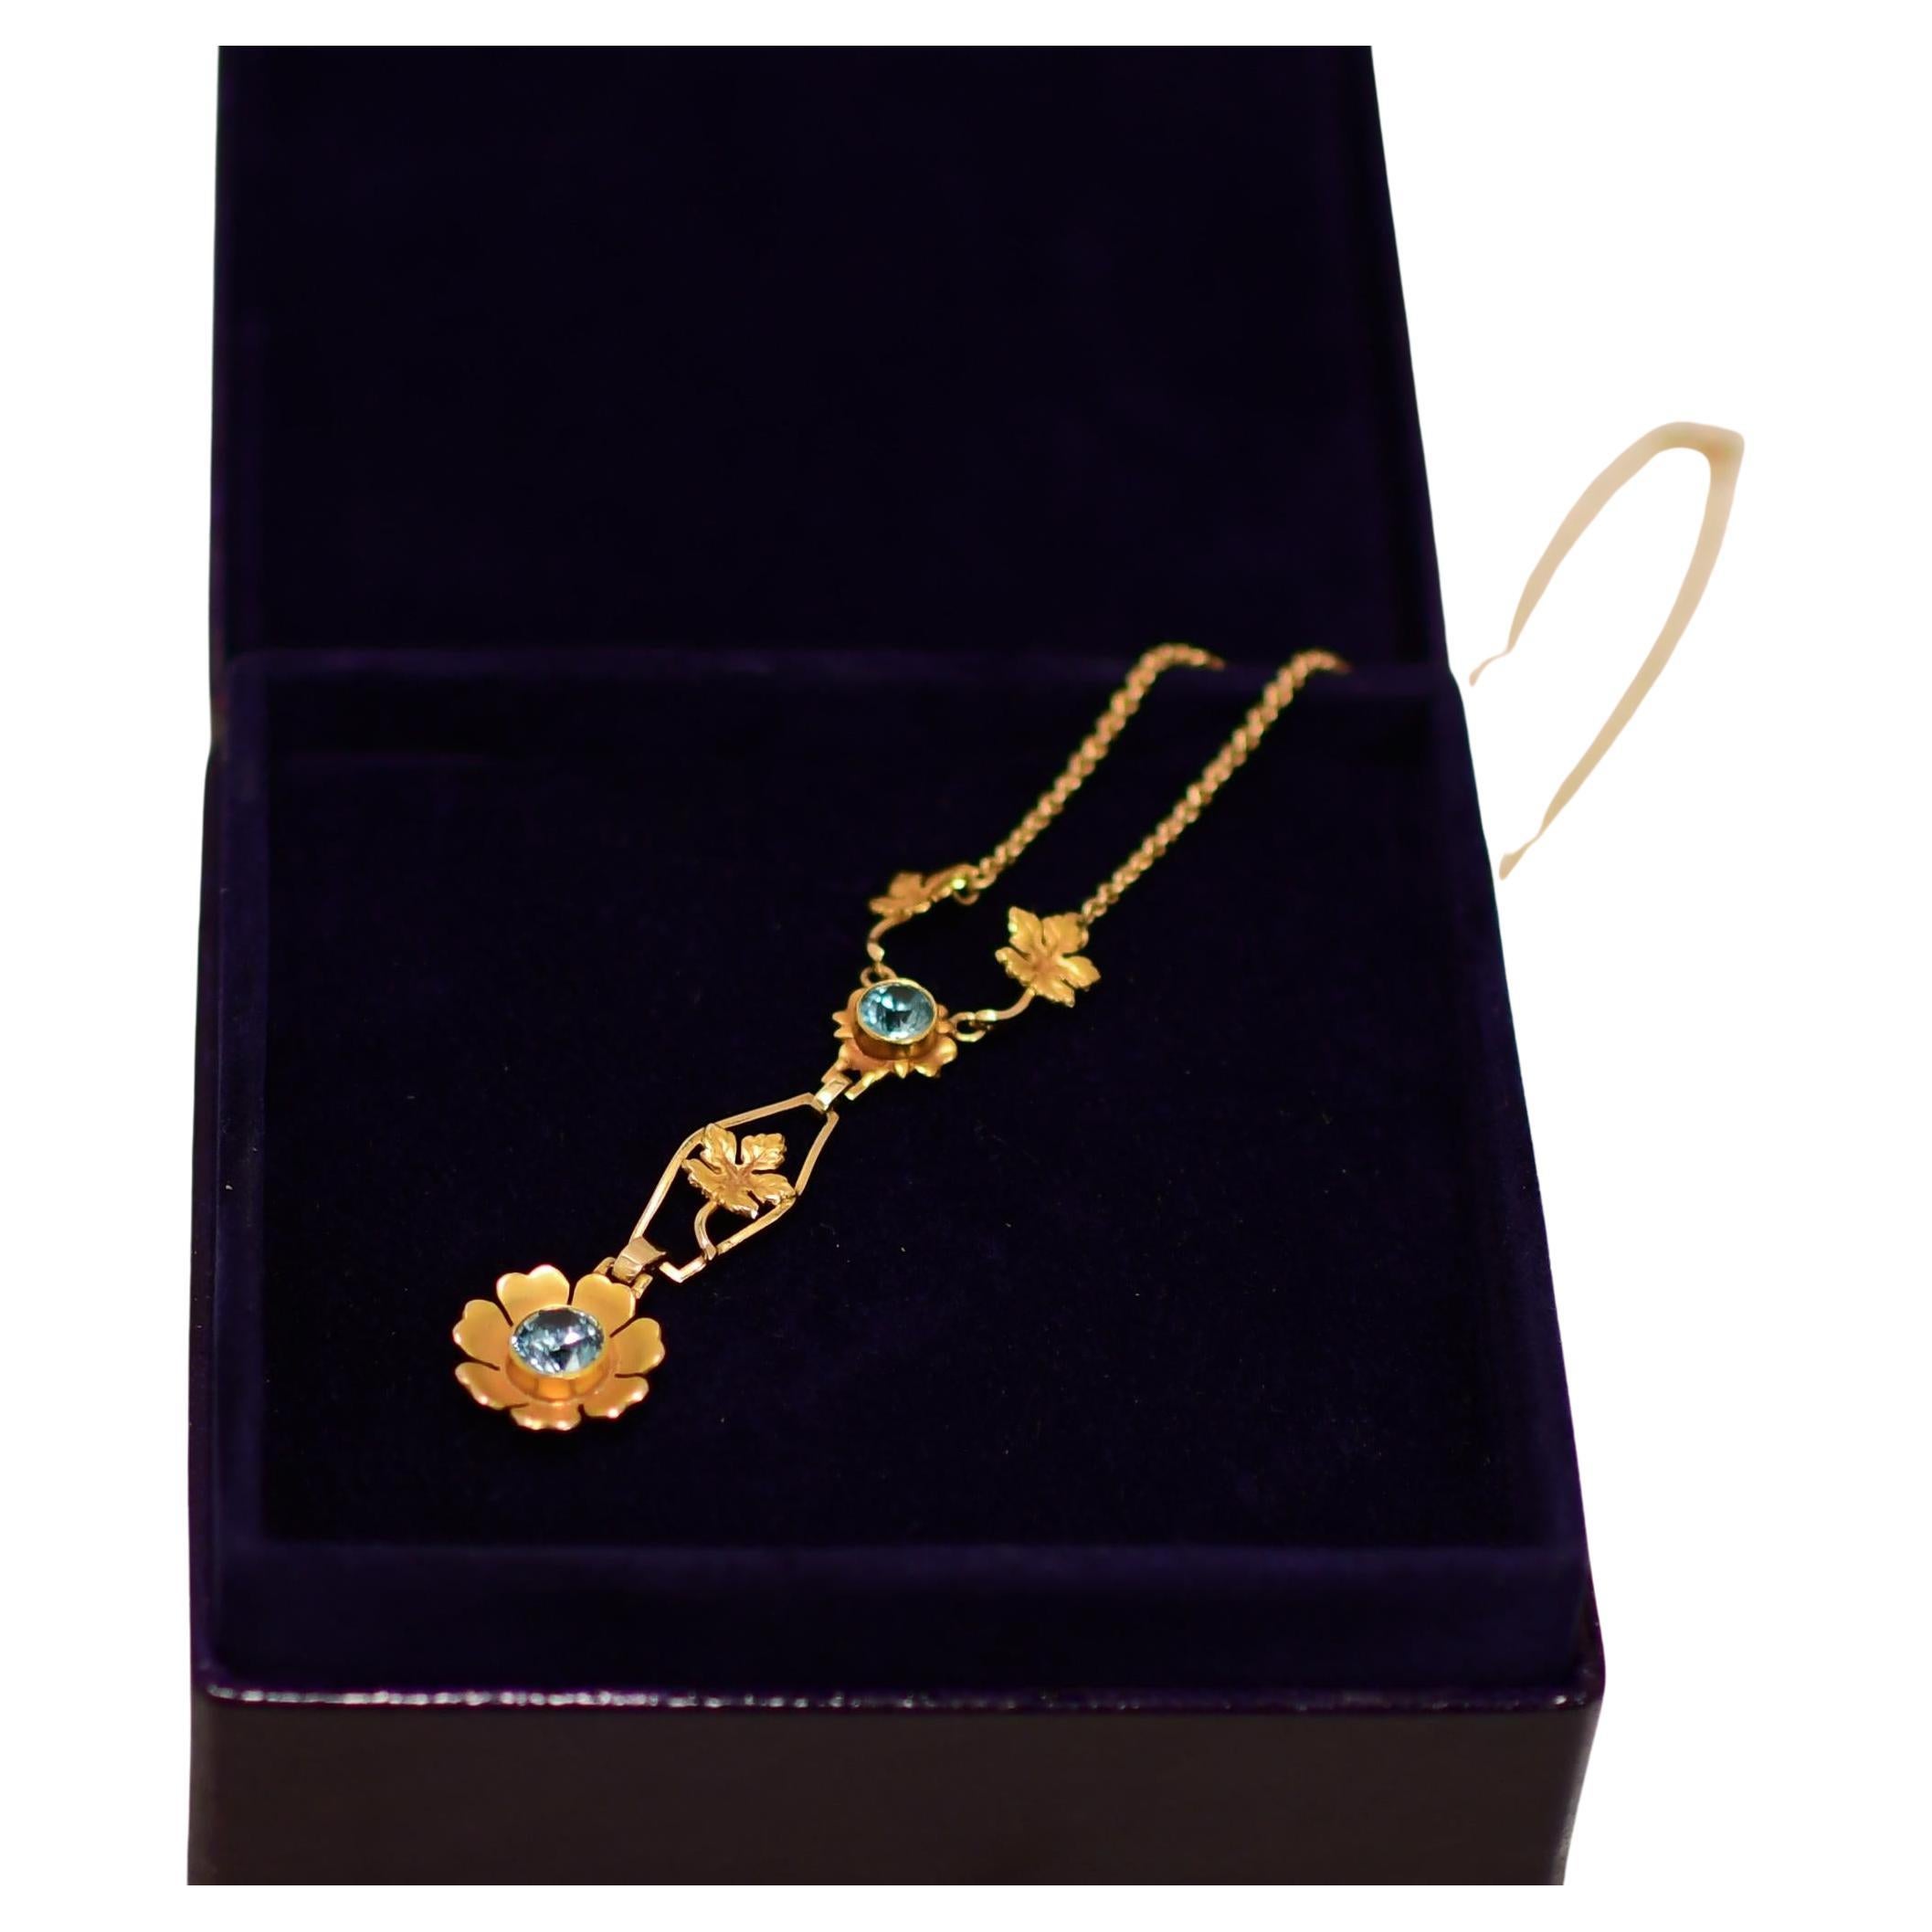 Tauchen Sie ein in die glamouröse Welt des Art déco mit dieser atemberaubenden Halskette. Das Herzstück dieses exquisiten Schmuckstücks ist ein faszinierender blauer Zirkon, der sicher in einer eleganten Lünette gefasst ist. Der leuchtend blaue